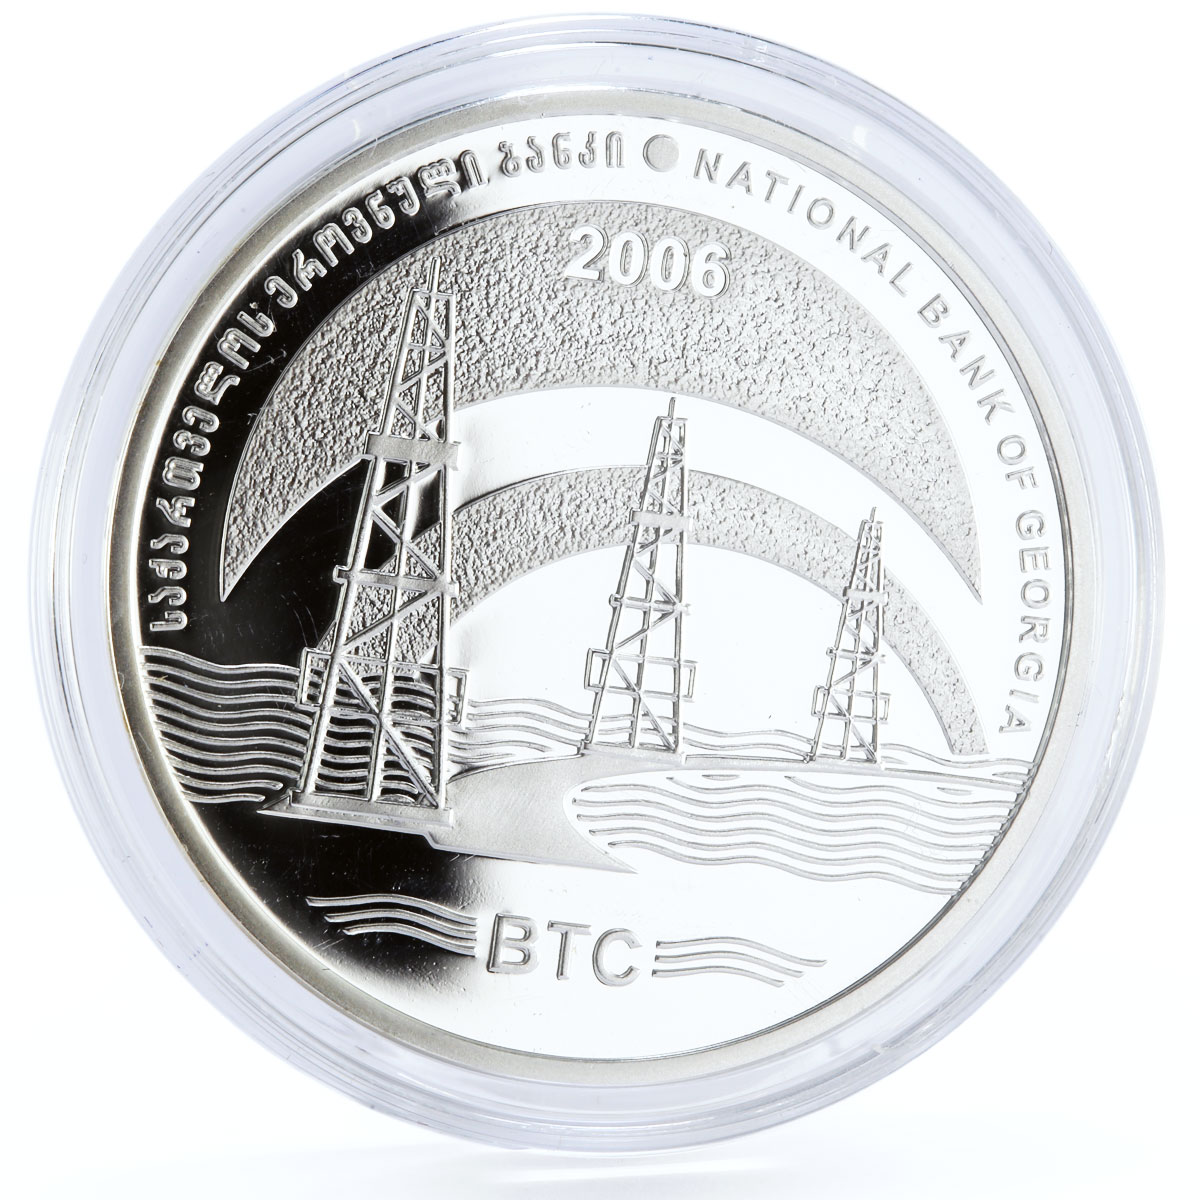 Georgia 3 lari BTC Oil Pipeline Refinery Plant silver coin 2006